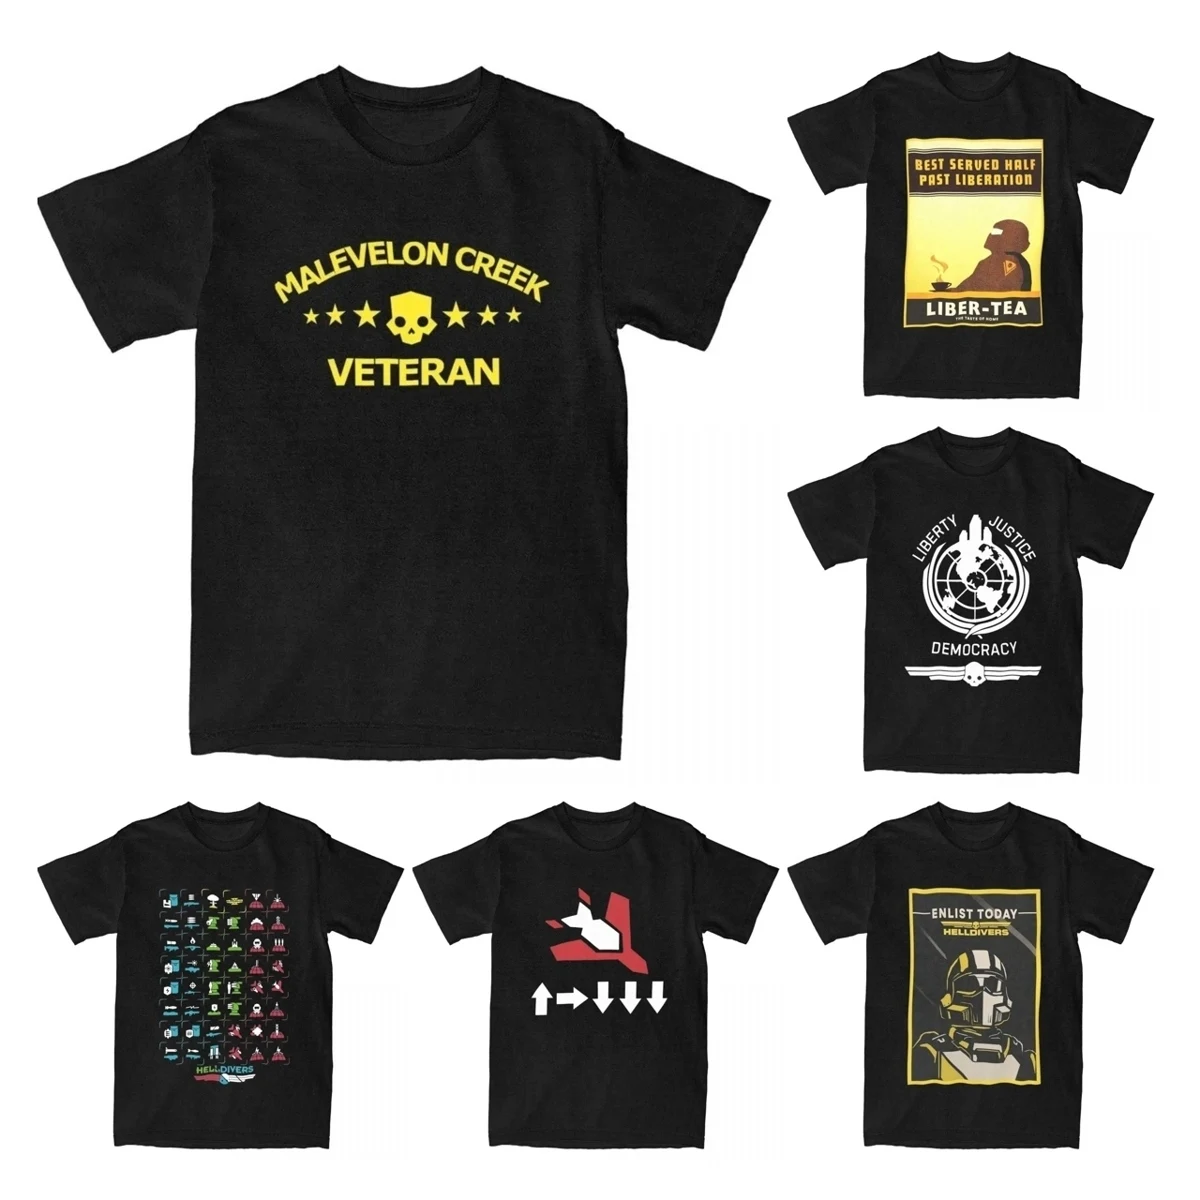 Hellbugs-Camiseta de algodón puro para hombre, camisa de manga corta con cuello redondo, ropa de fiesta, 2 Malevelon Creek Veteran